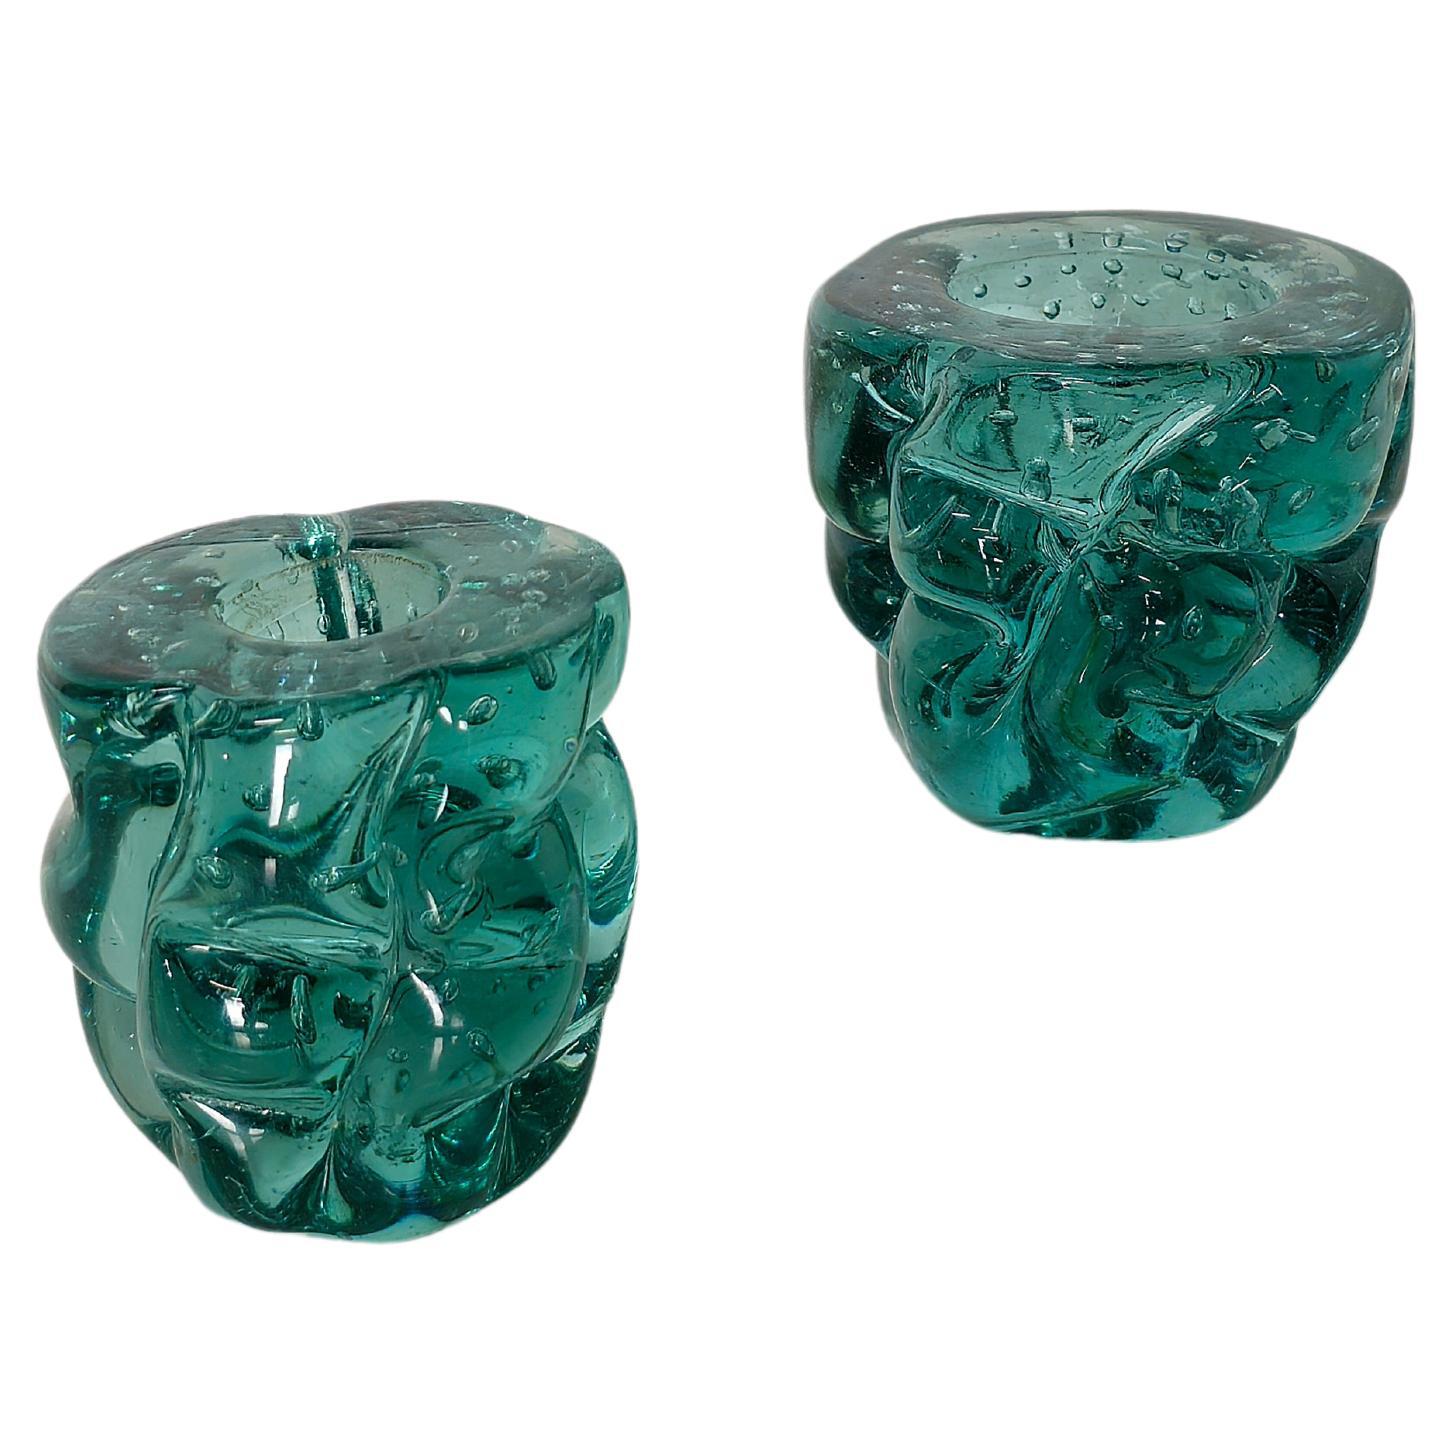 Seguso Dekorative Objekte Schalen Vase Murano Glas Midcentury 1960s Set von 2 